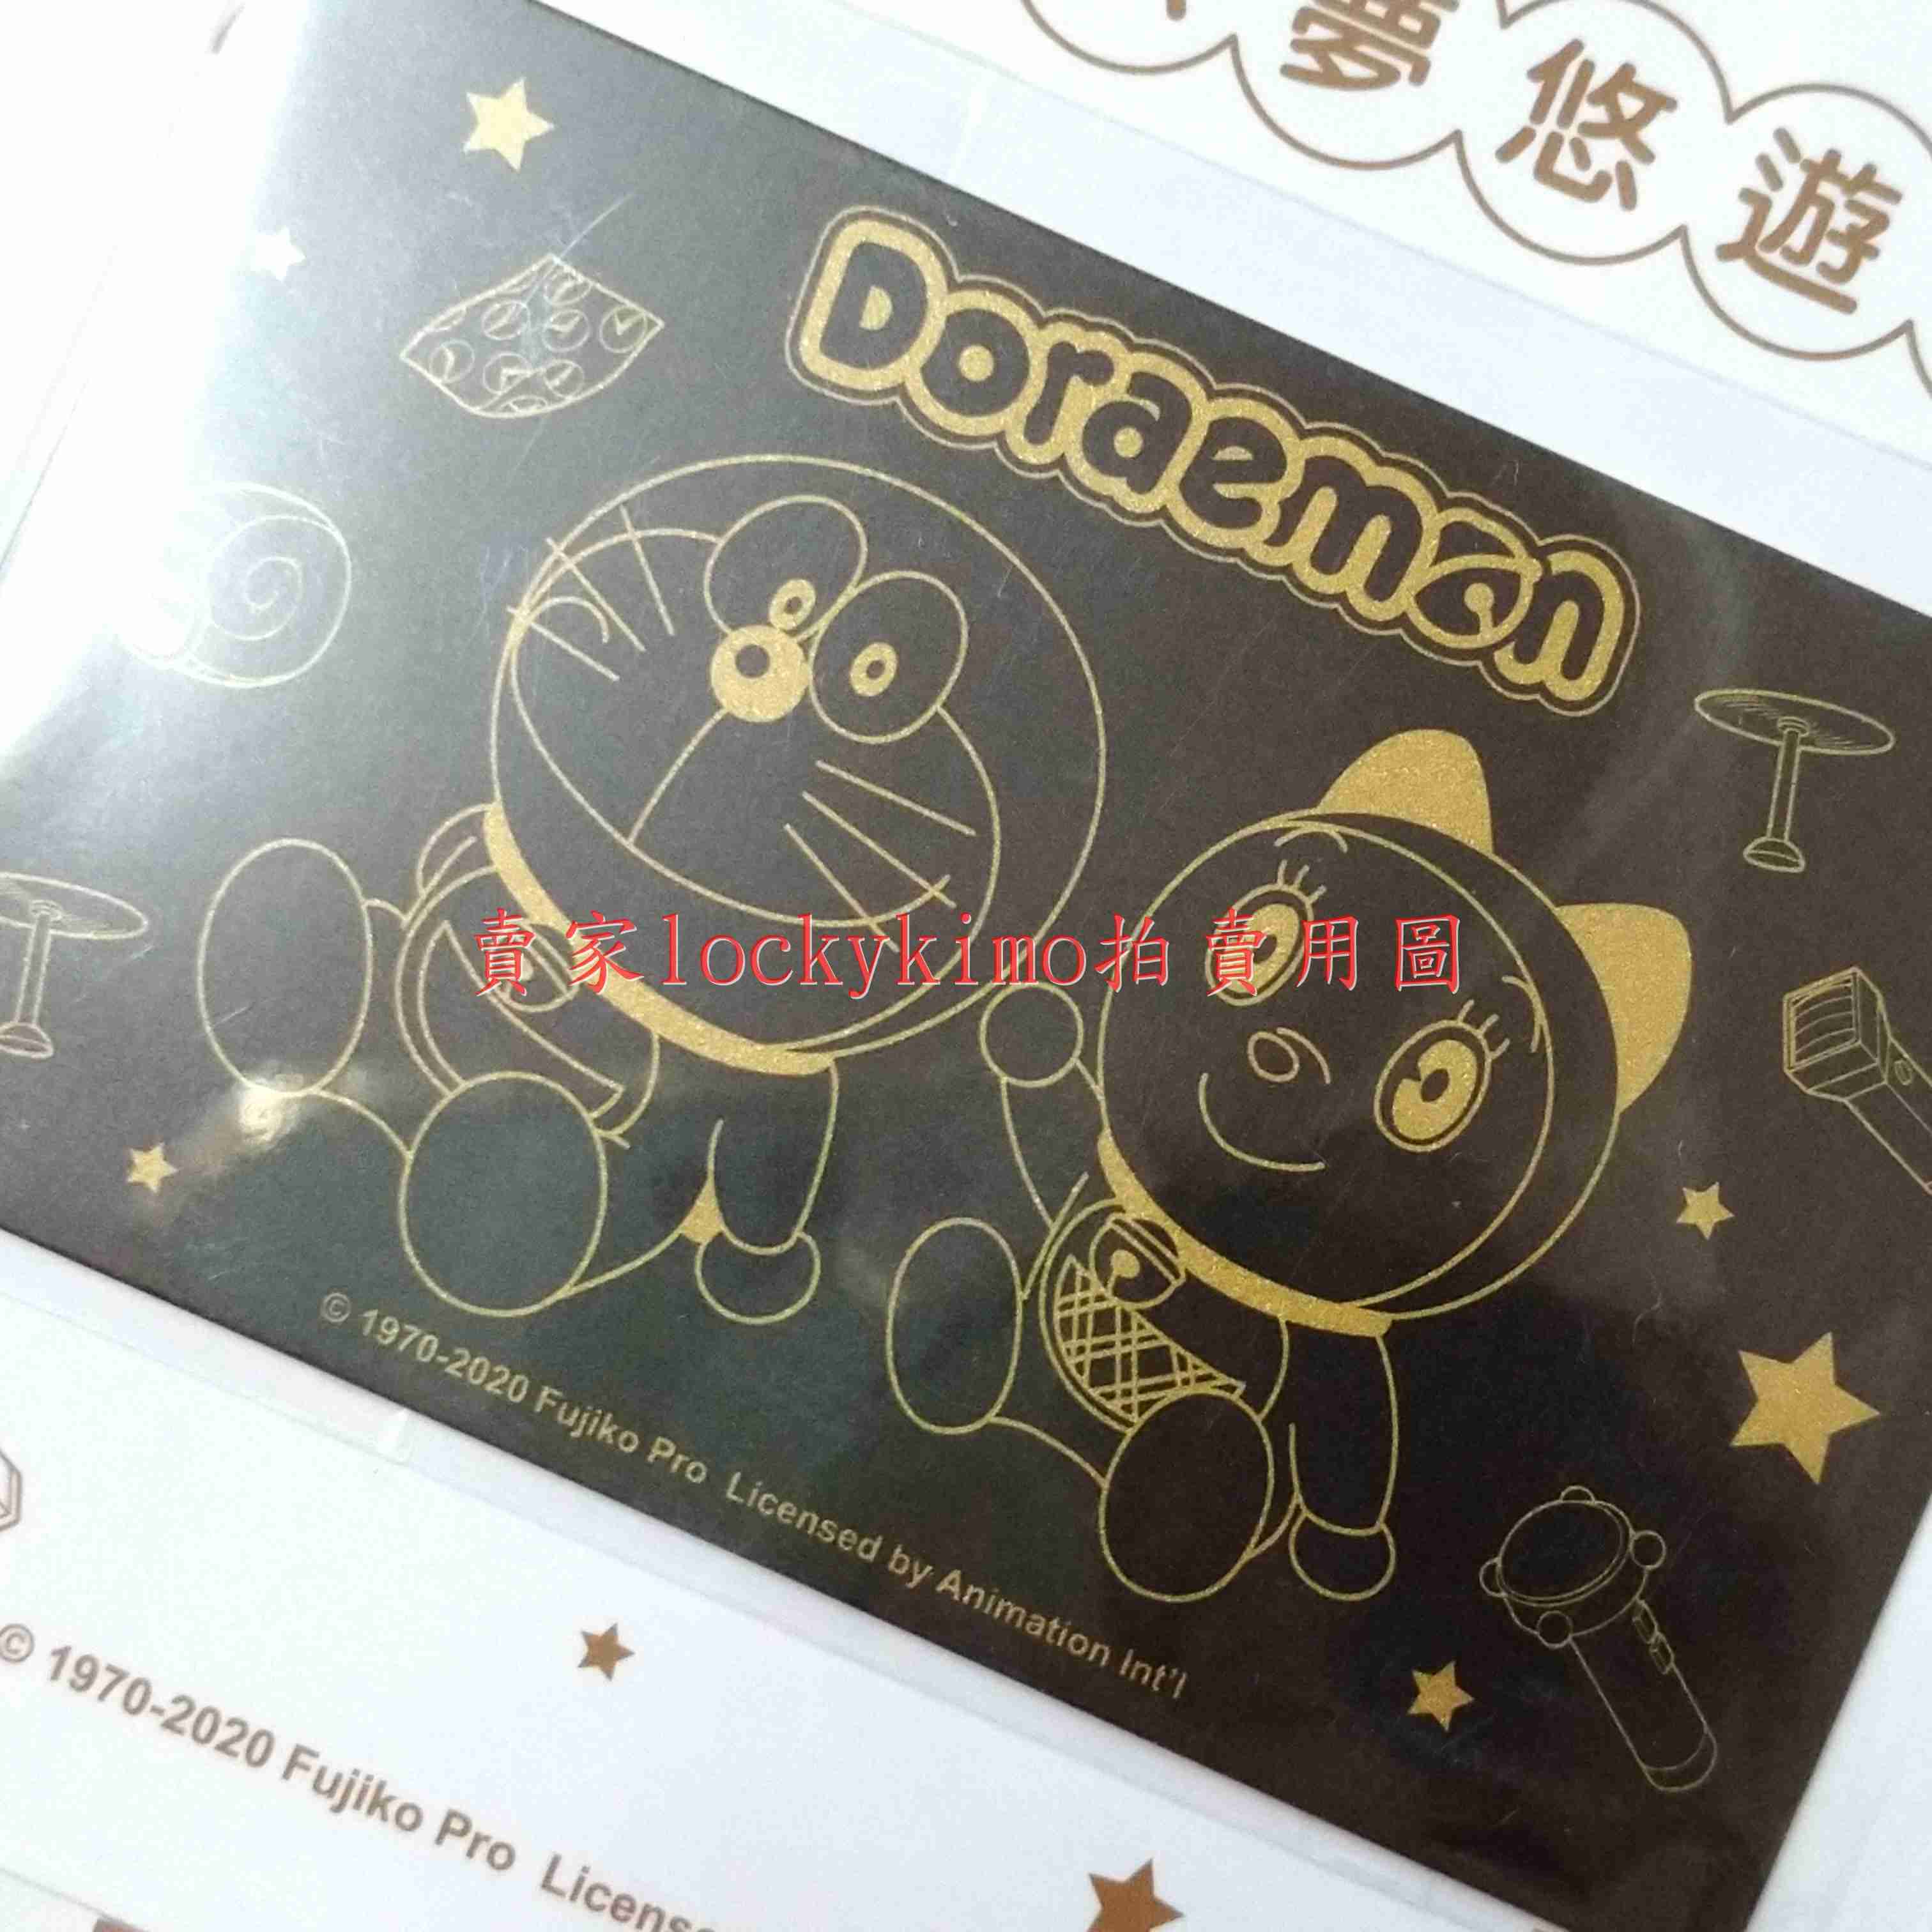 【哆啦A夢 悠遊卡 復古黑金風】收藏卡 Doraemon 珍藏卡 哆啦a夢 機器貓 小叮噹 多啦A夢 超能貓 卡片 亮